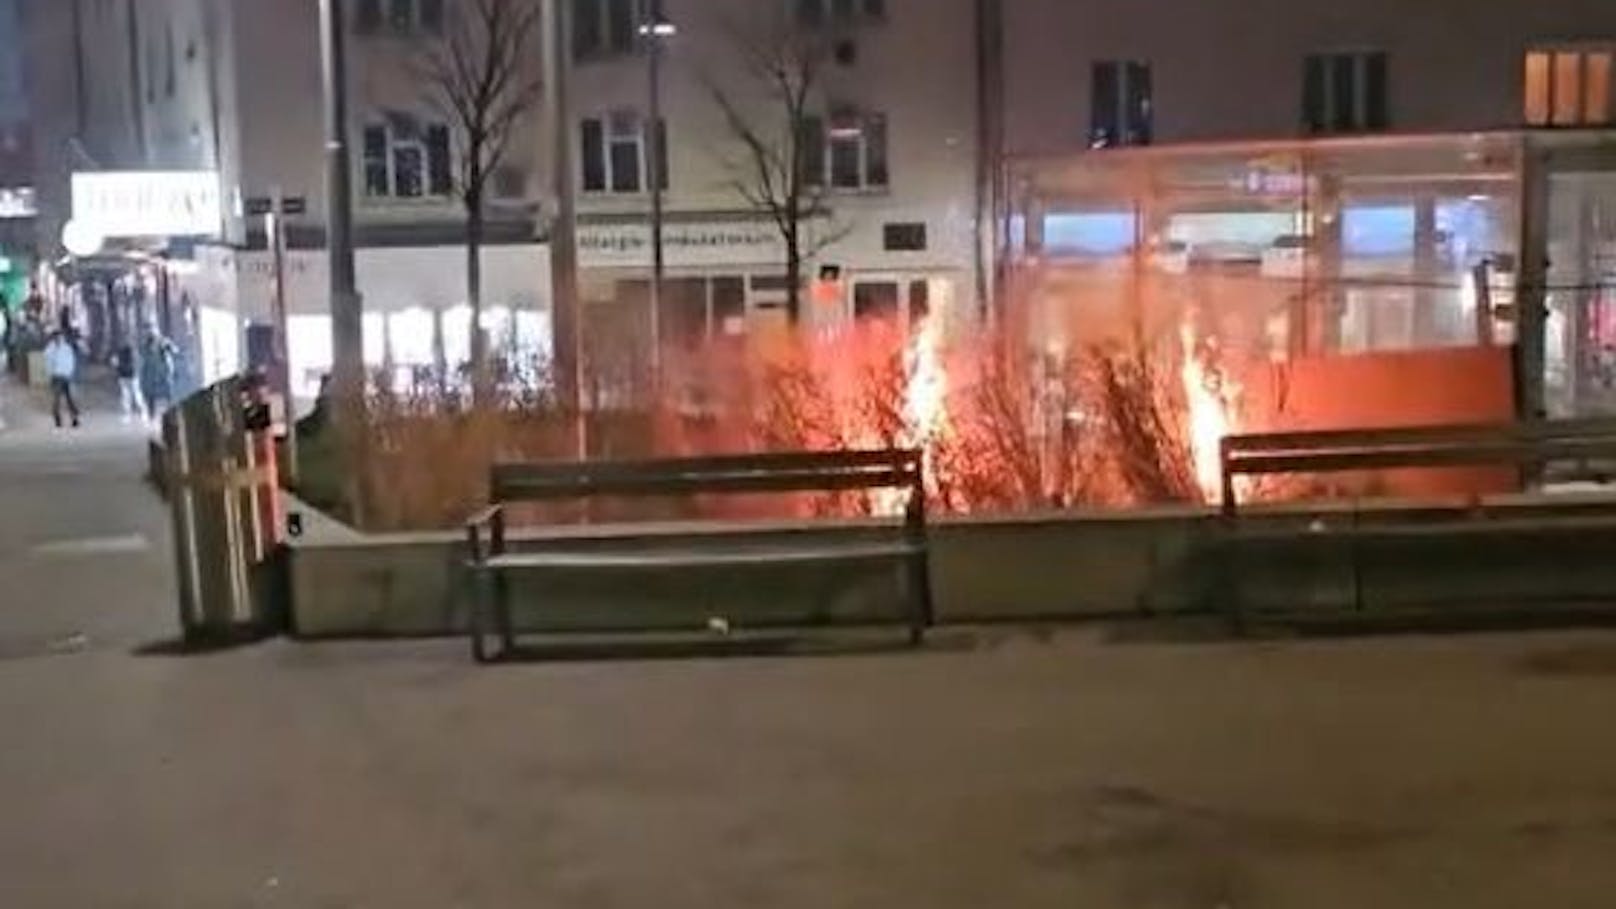 Am Samstagabend kam es auf Grund einer Pyro-Entgleisung (nicht nur) zu einem Busch-Brand in Wien-Favoriten,